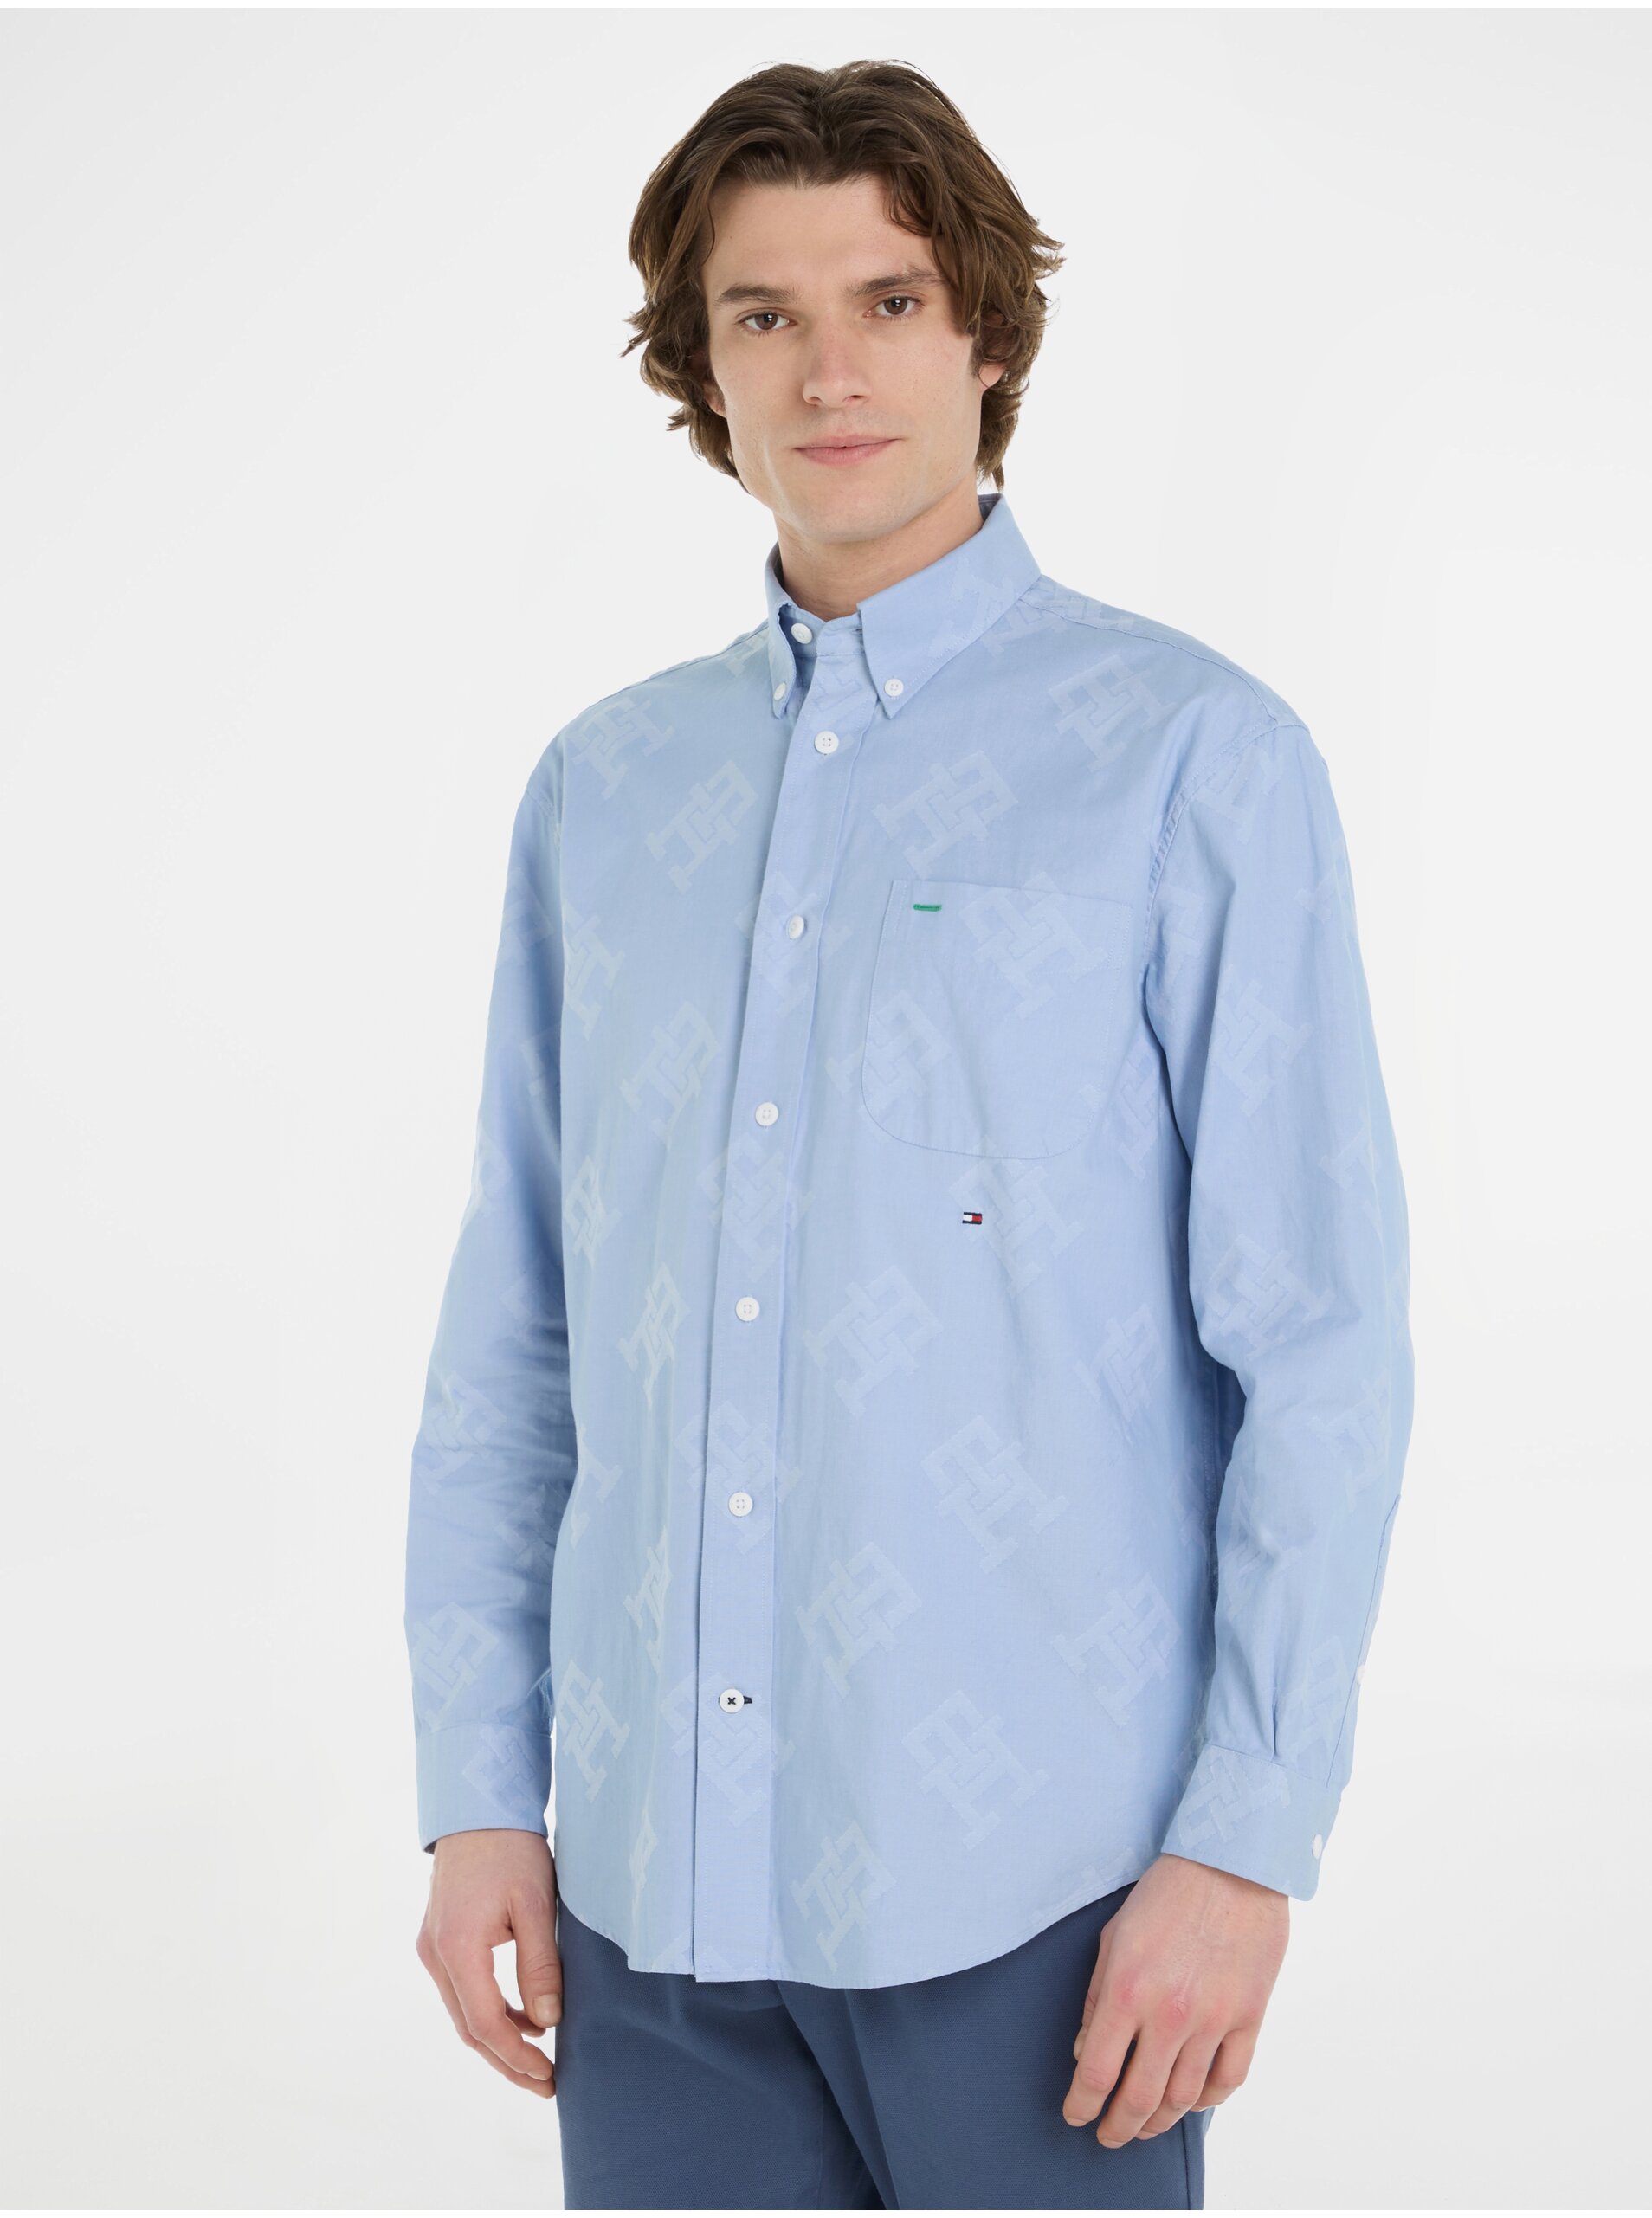 E-shop Světle modrá pánská vzorovaná košile Tommy Hilfiger Premium Oxford